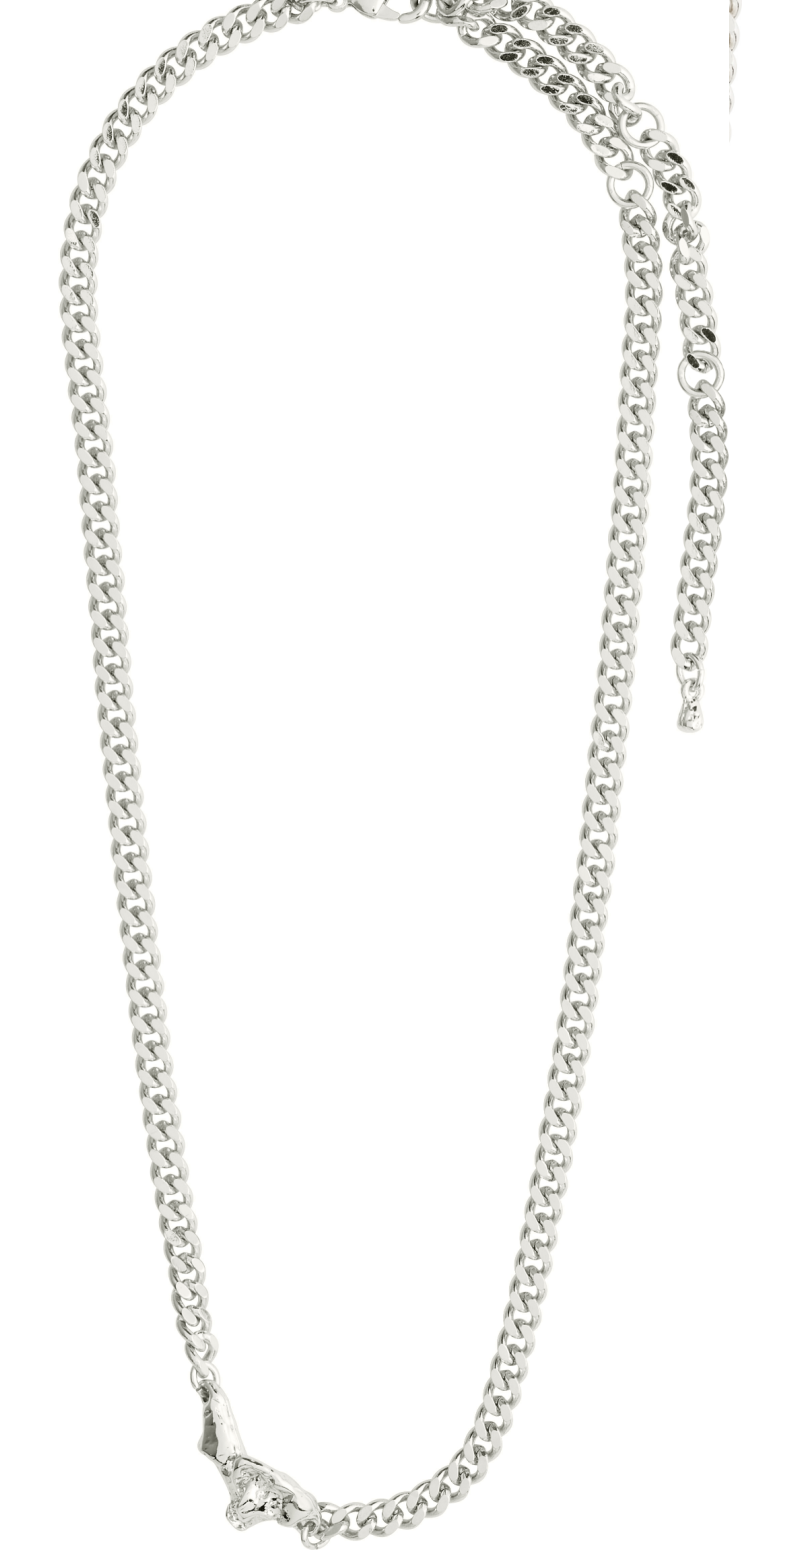 Sølvbelagt halskæde i curb chain-design